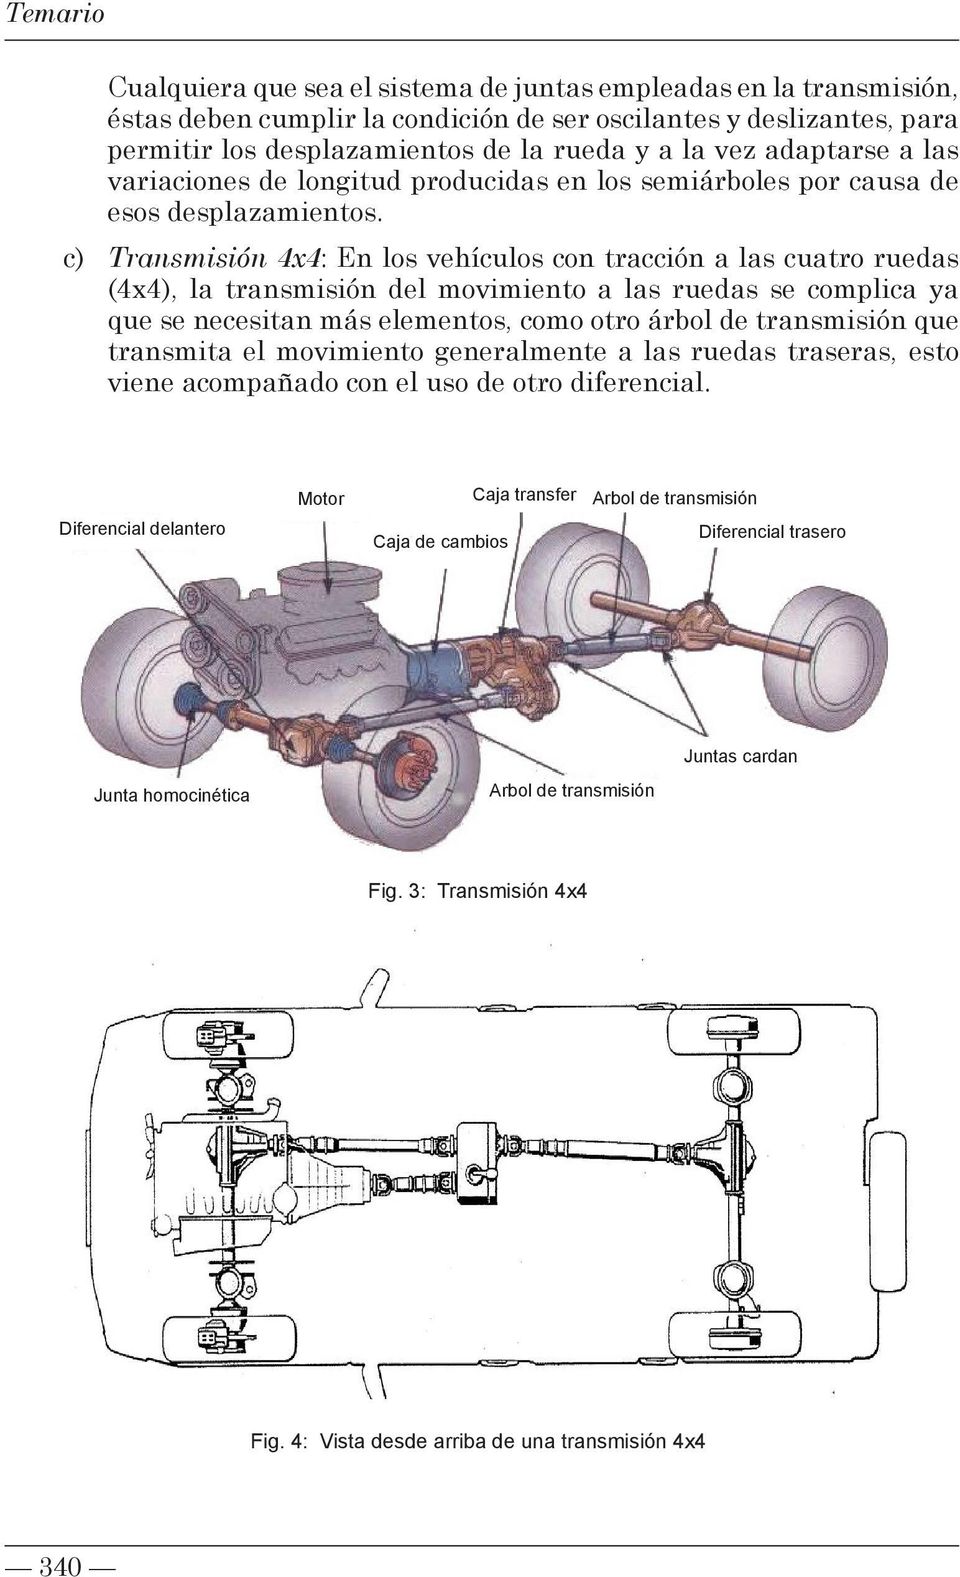 c) Transmisión 4x4: En los vehículos con tracción a las cuatro ruedas (4x4), la transmisión del movimiento a las ruedas se complica ya que se necesitan más elementos, como otro árbol de transmisión